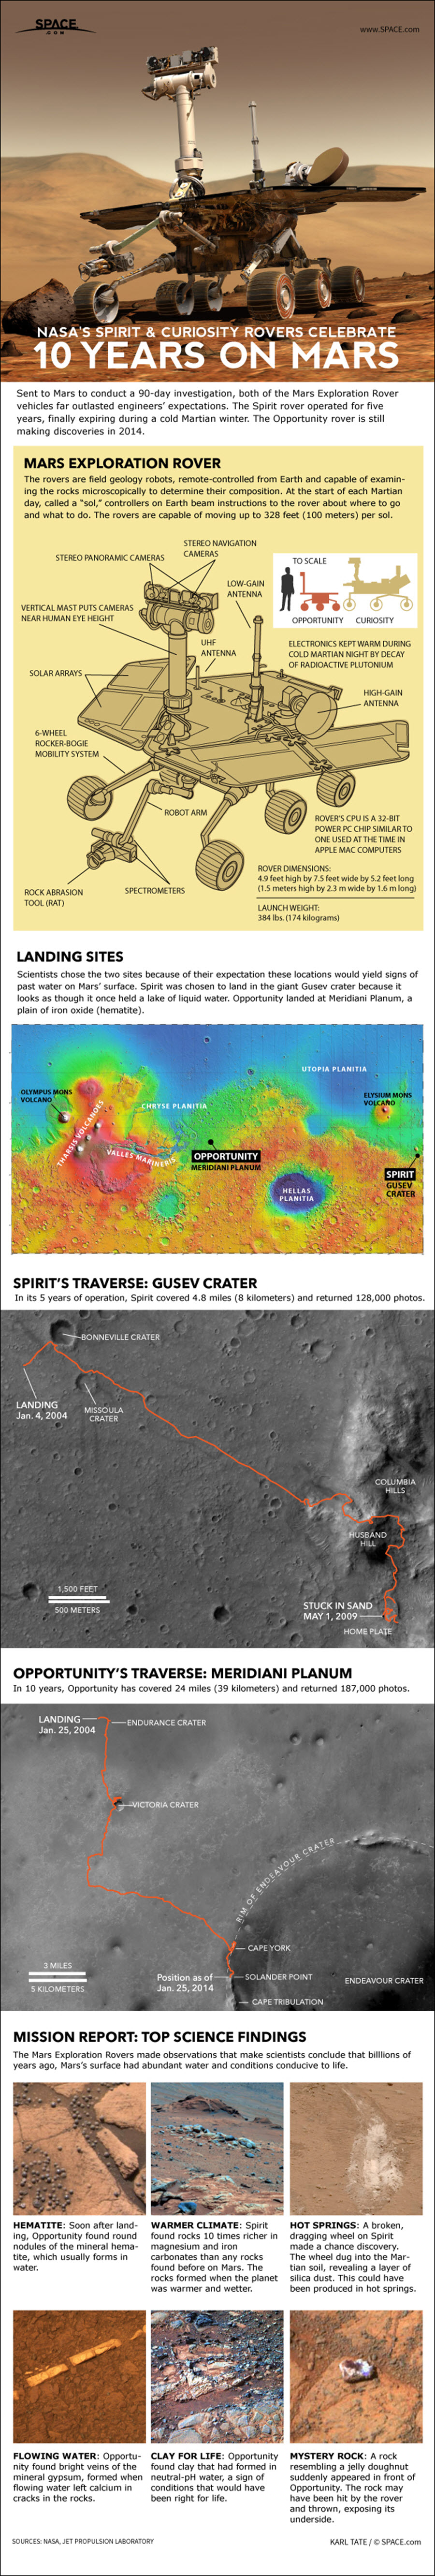 mars-rovers-spirit-opportunity-mer-140123b-02